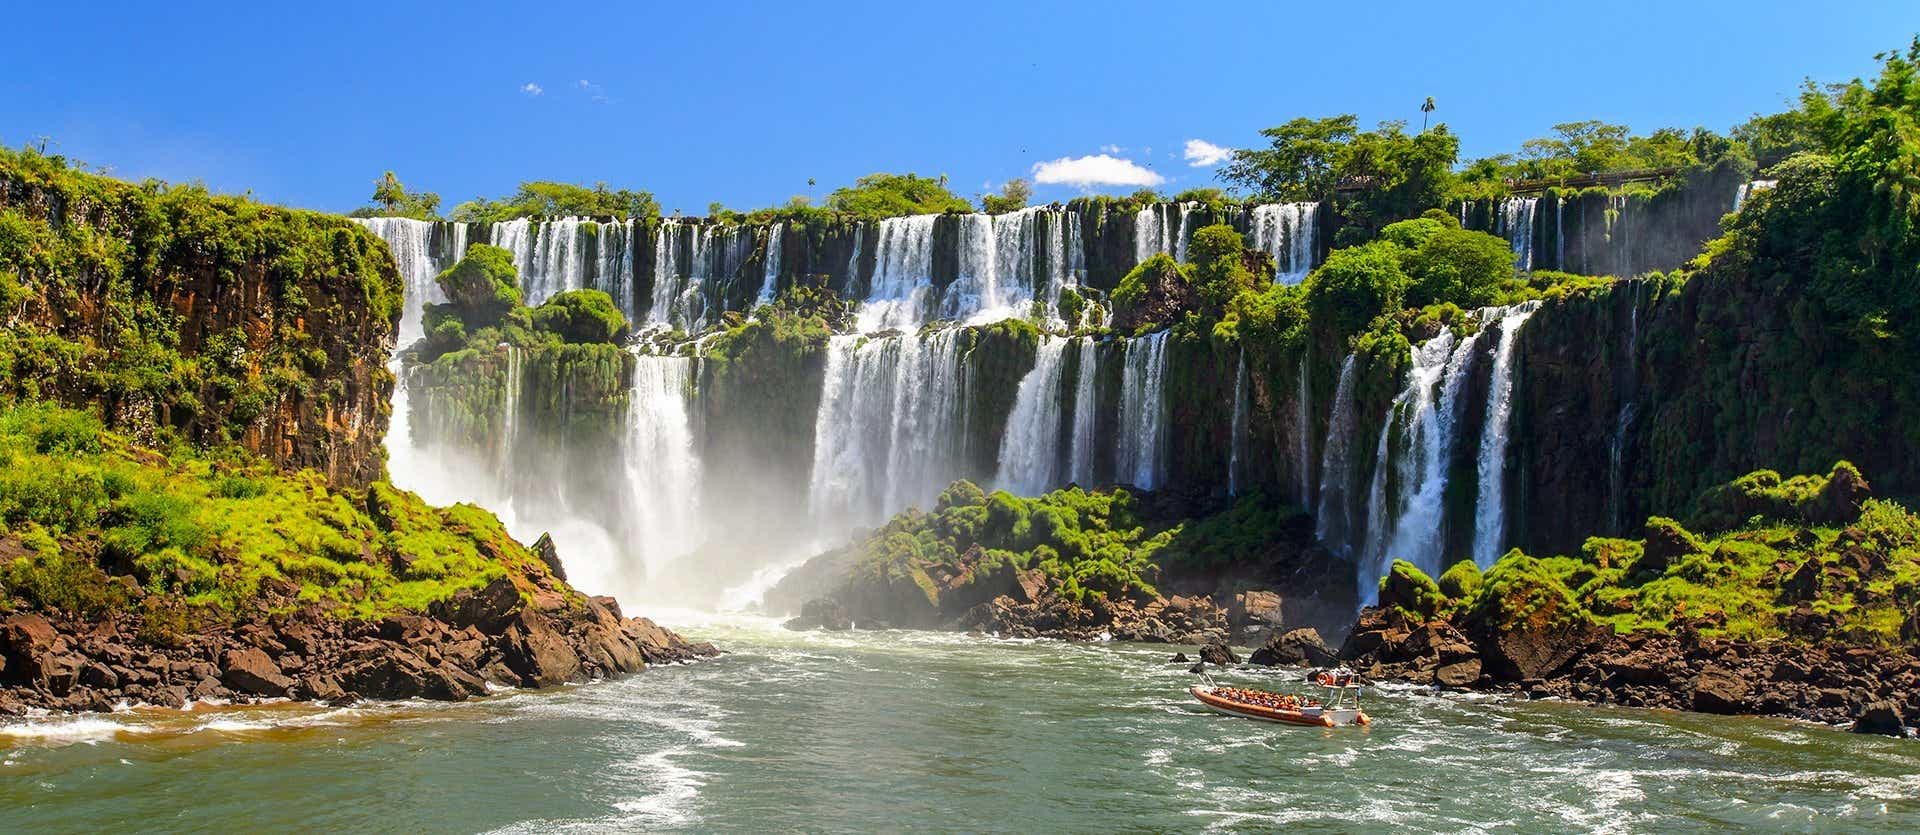 Cataratas de Iguazú <span class="iconos separador"></span> Argentina